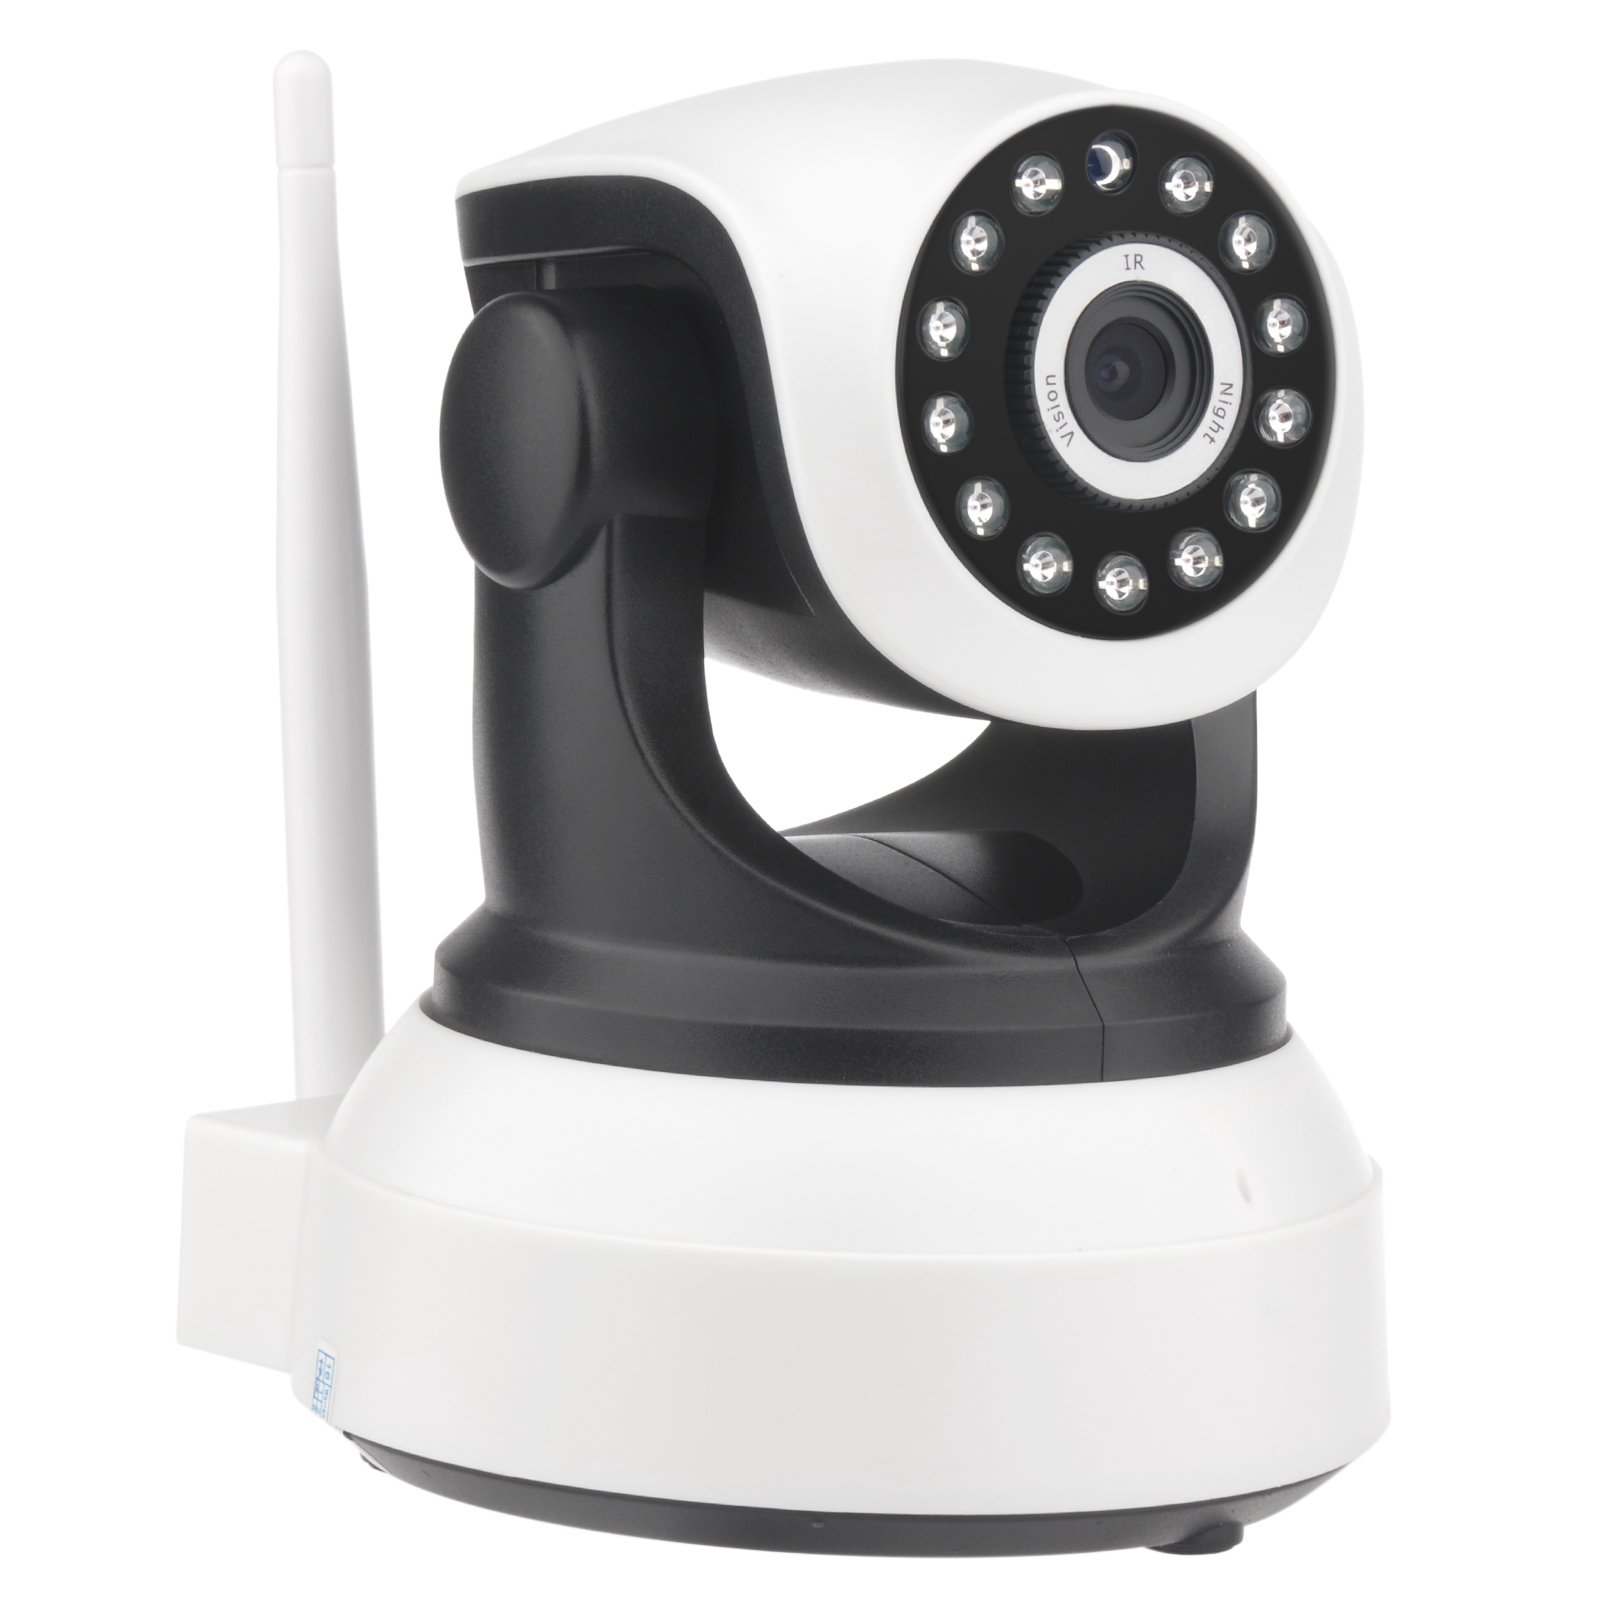 Topchances 720P WiFi IP Kamera Wireless Home Security Überwachung Baby Monitor mit HD Nachtsicht und Bewegungserkennung für Baby / Älteres / Haustier Monitor